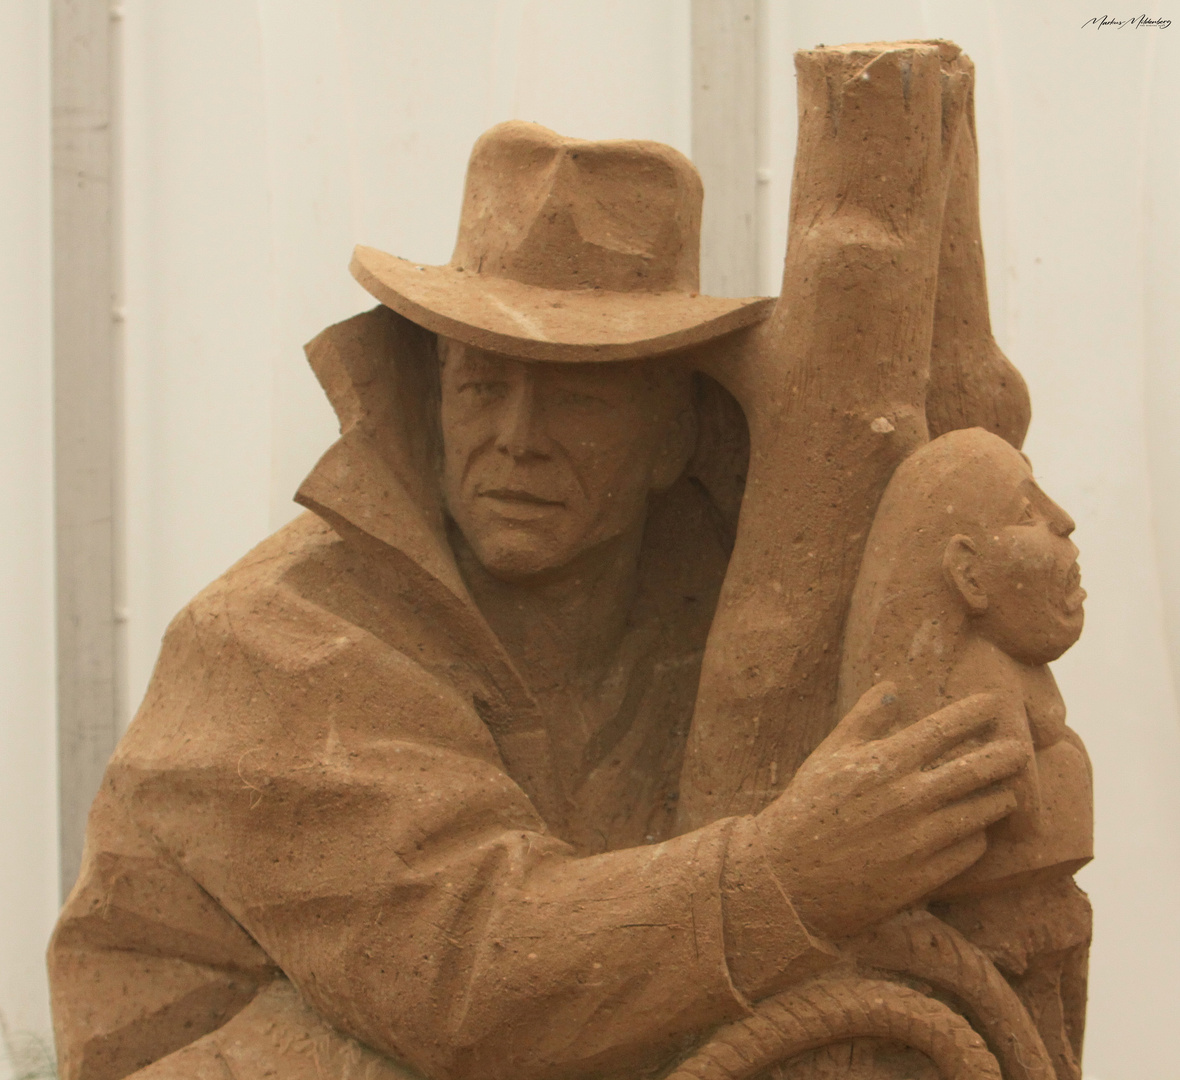 Sandskulpturen in Rügen, 2015